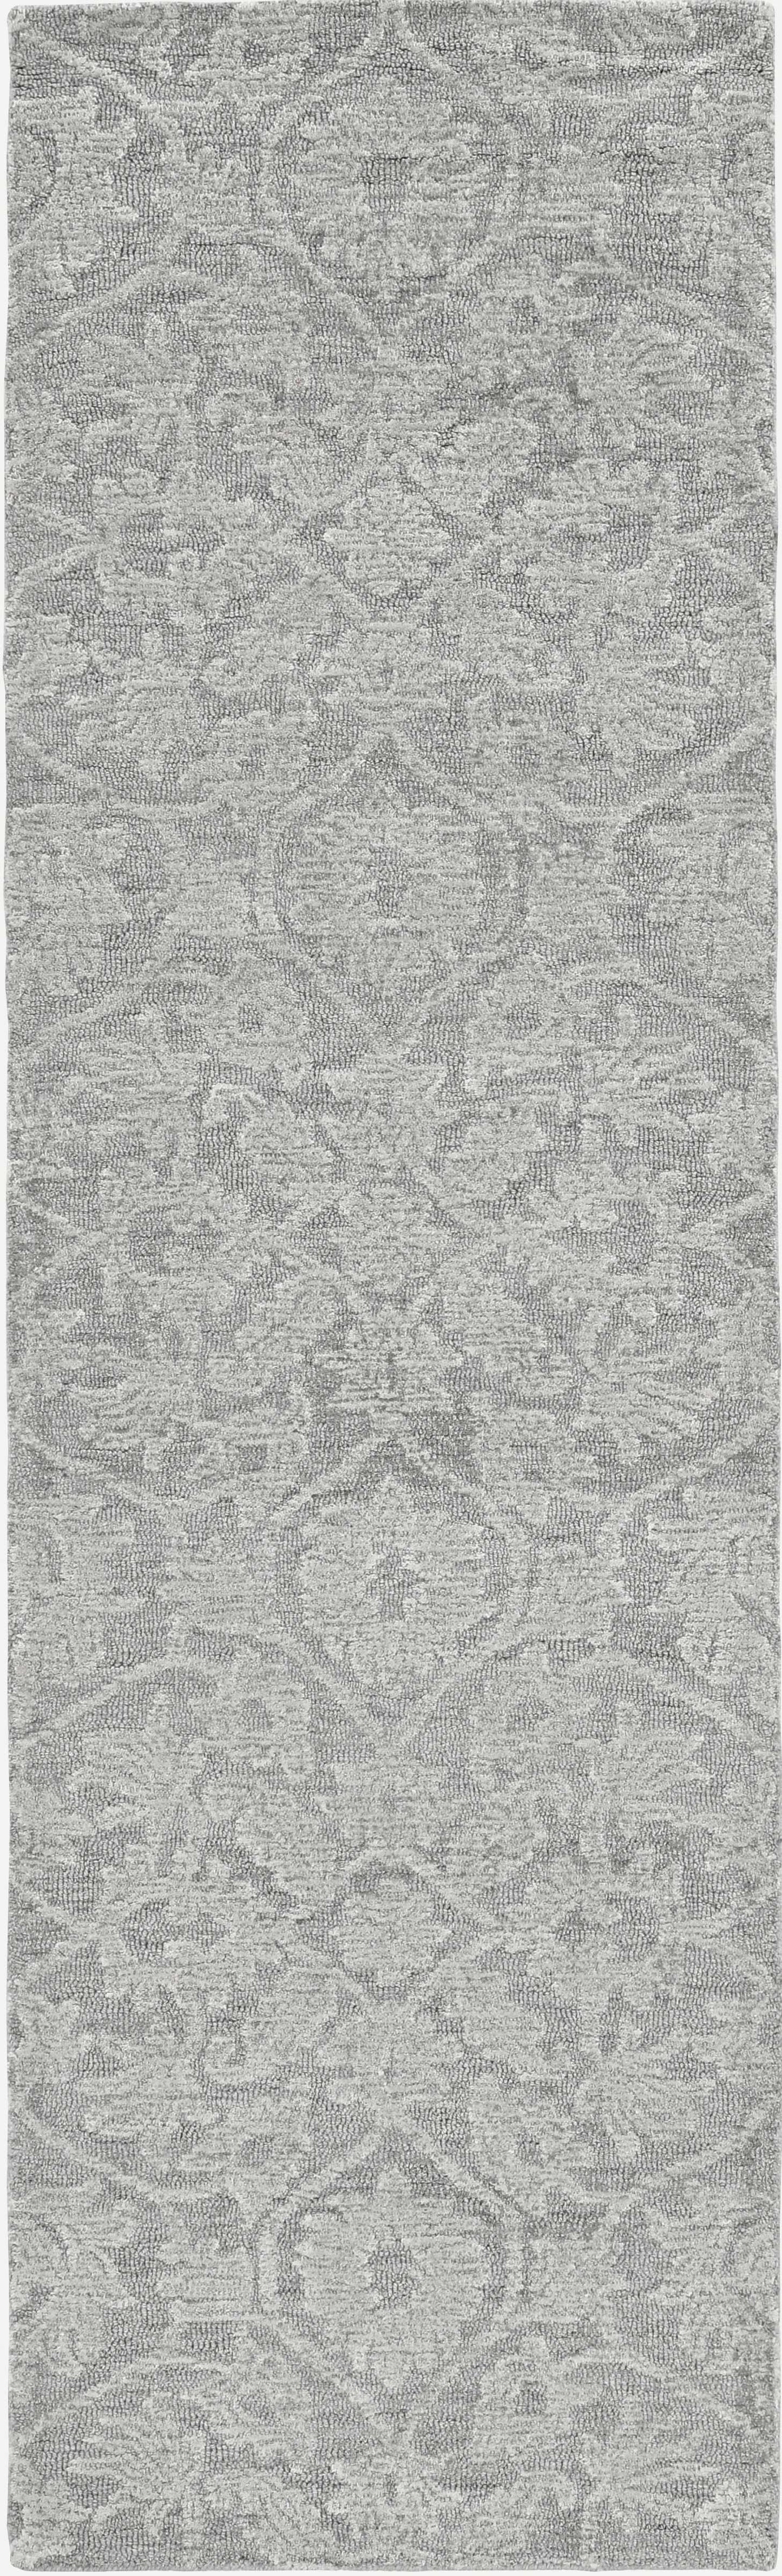 78 X 114 Grey Wool Rug